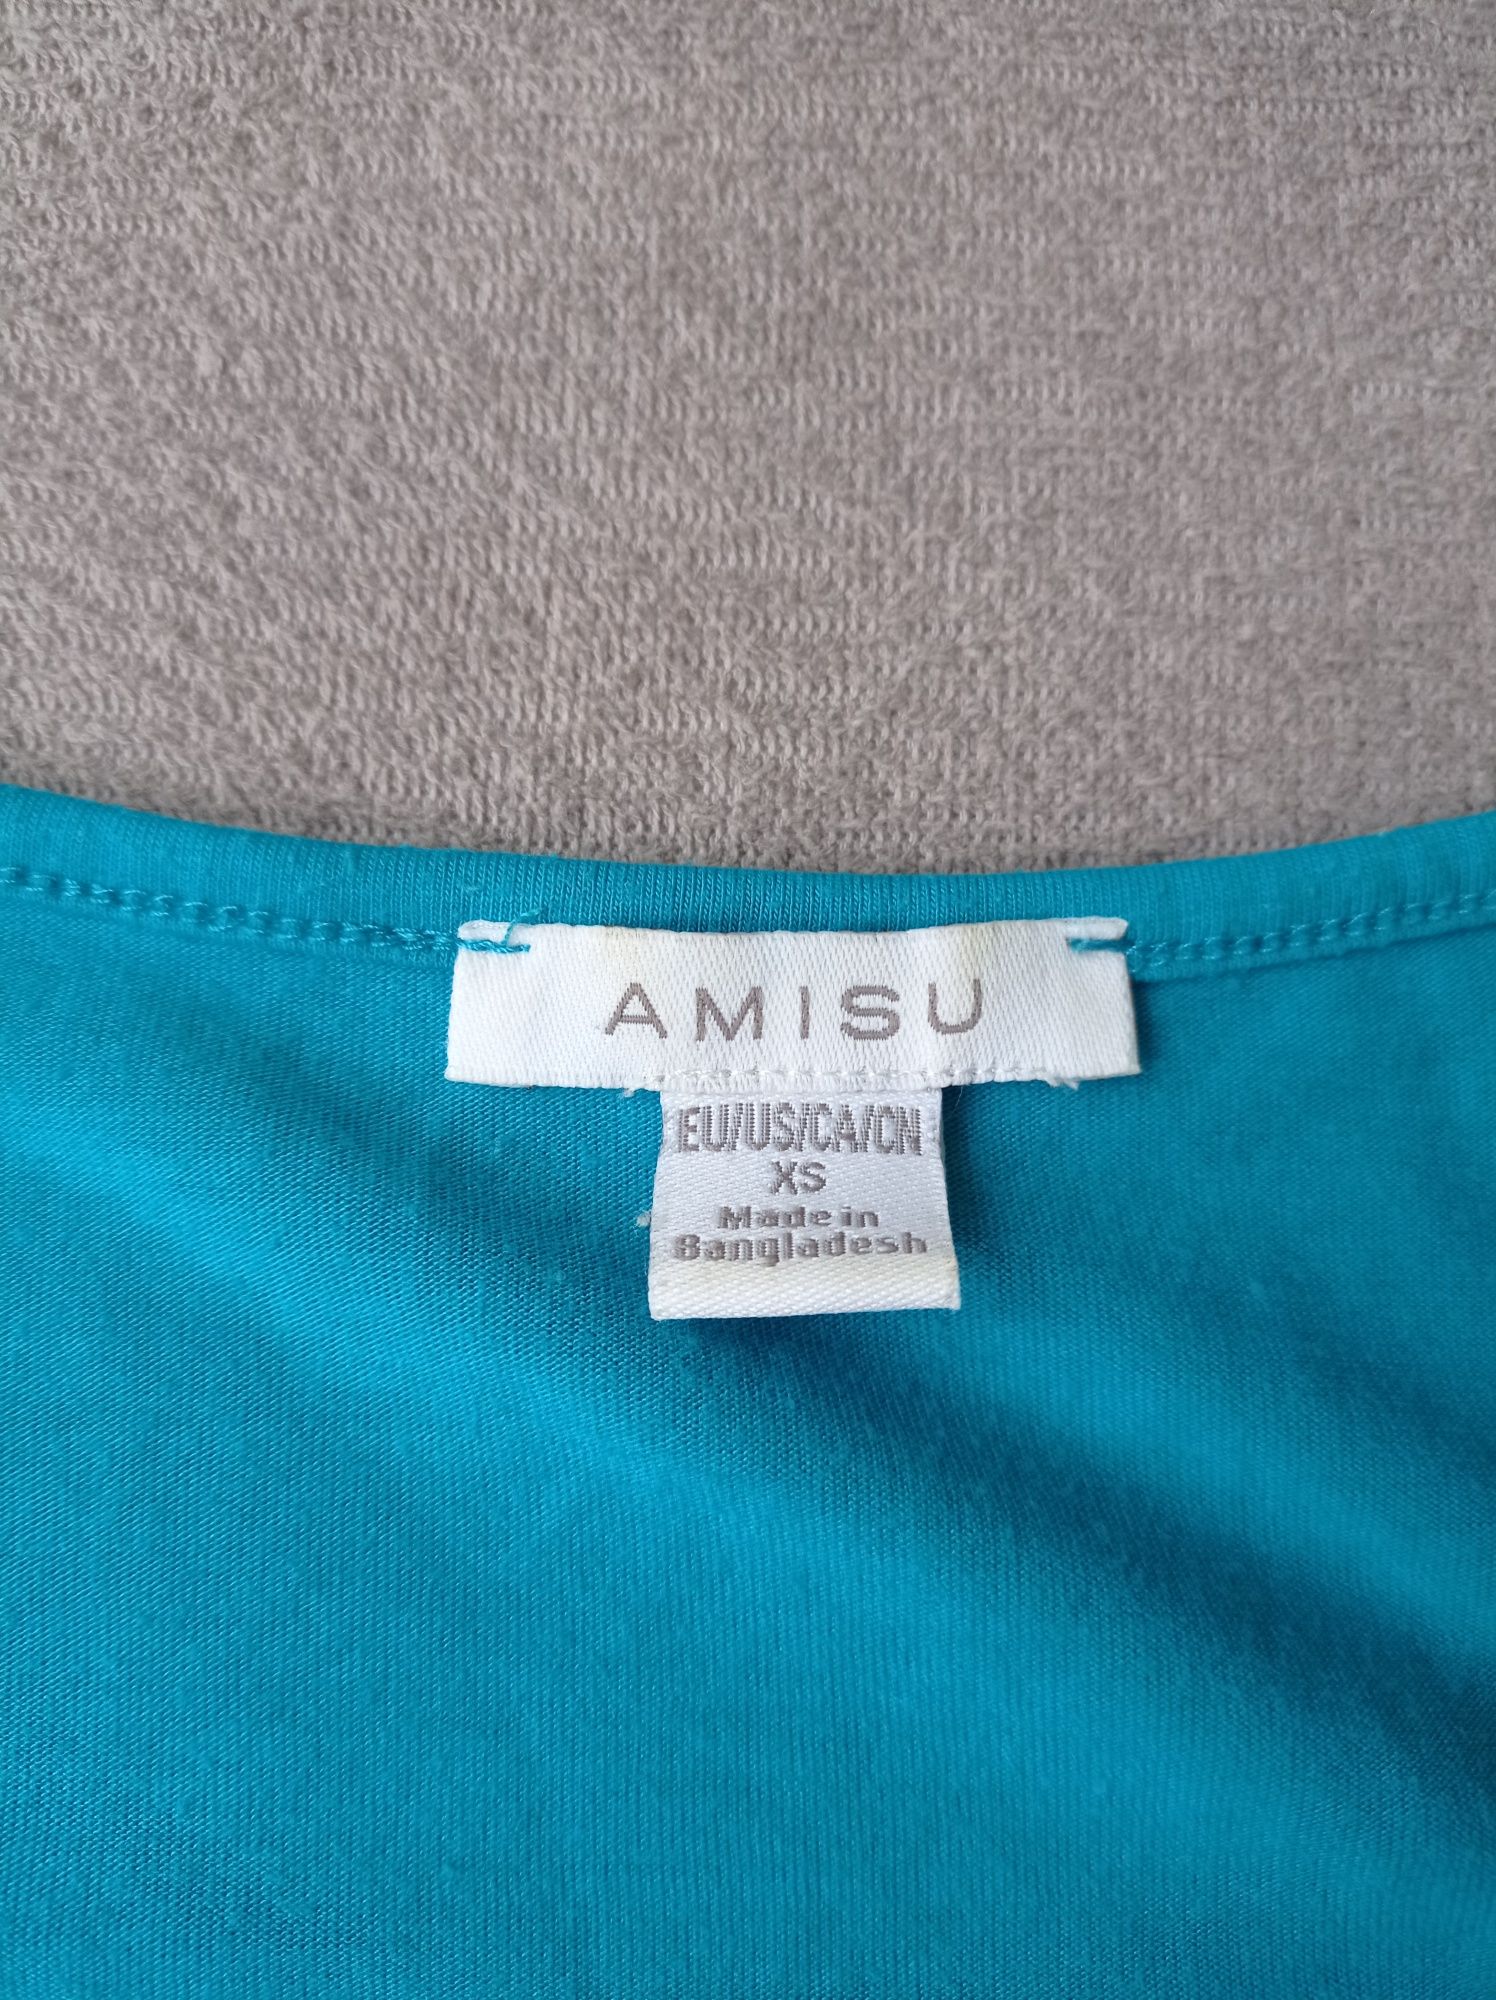 Bluzka na ramiączkach Amisu rozmiar XS S 36 34, koszulka